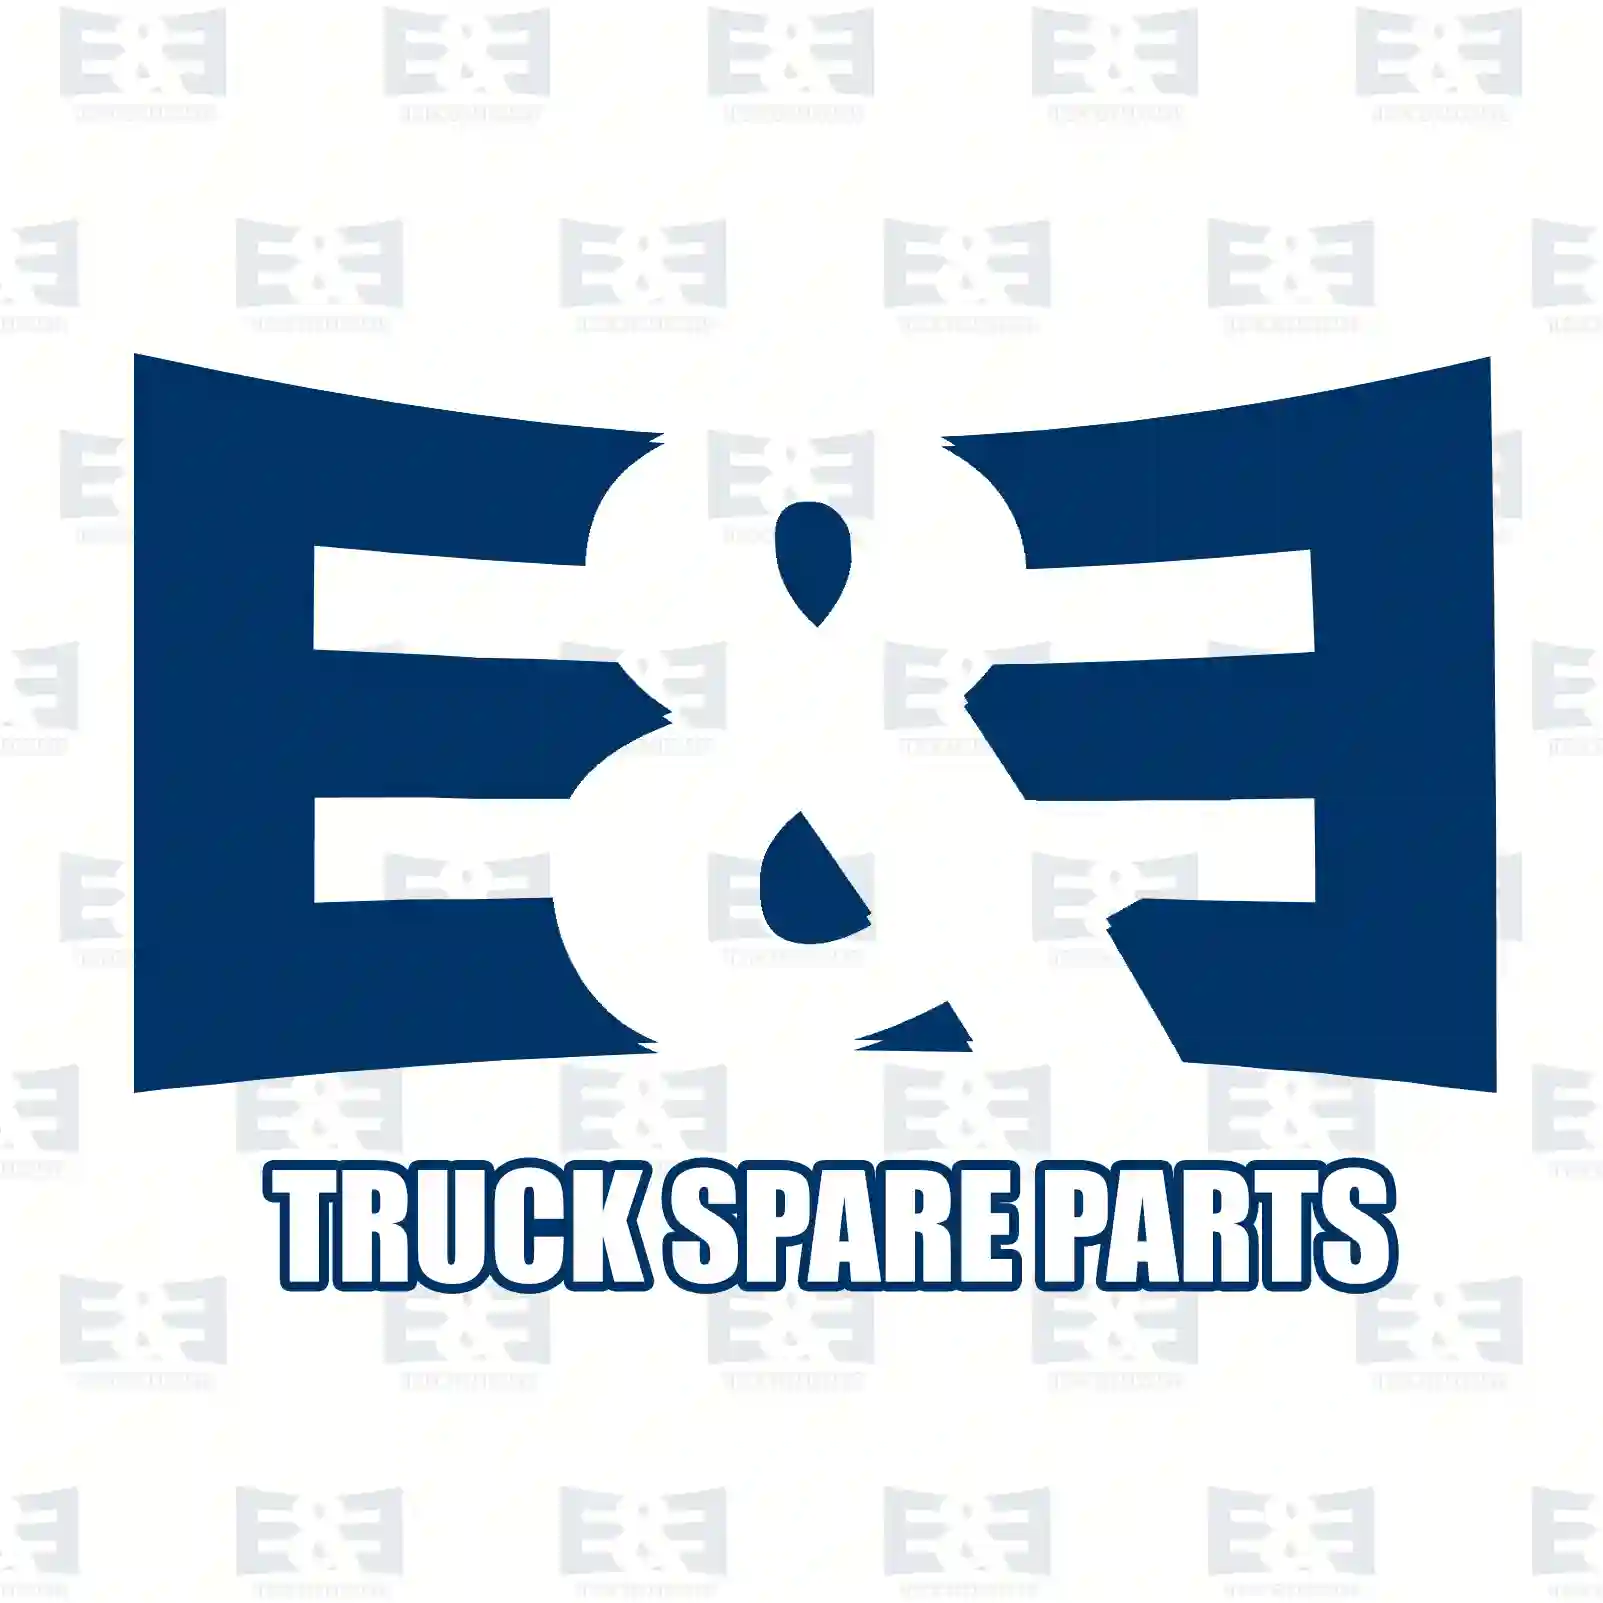  Oil level sensor || E&E Truck Spare Parts | Truck Spare Parts, Auotomotive Spare Parts